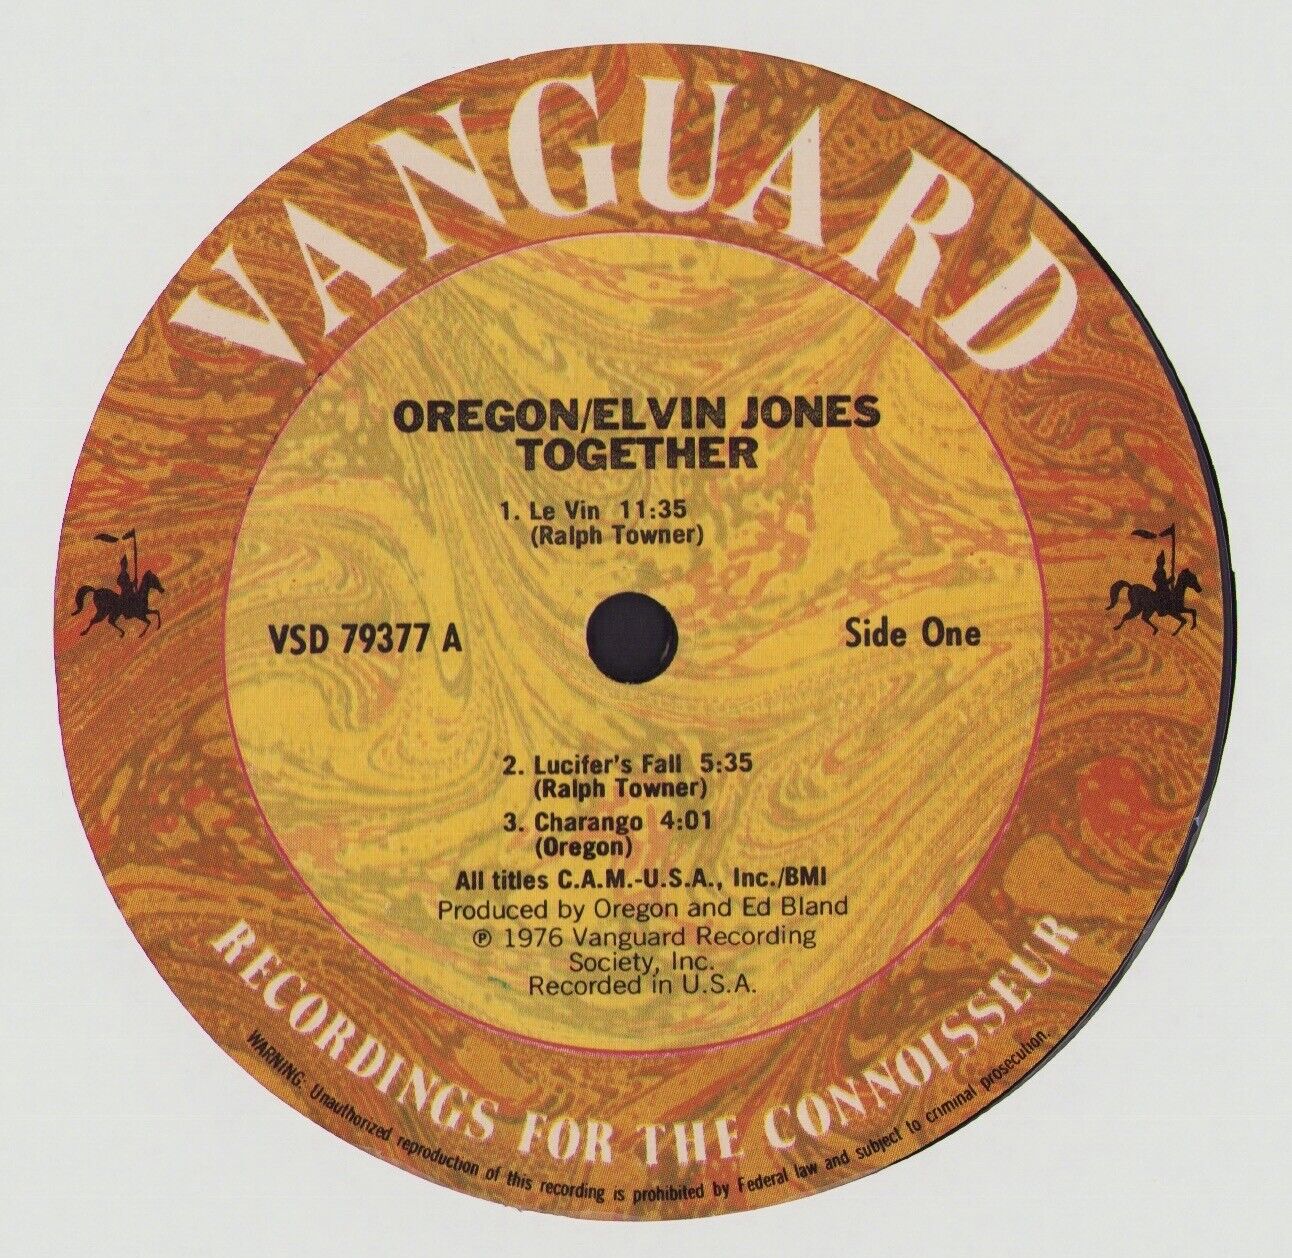 Oregon / Elvin Jones ‎- Together Vinyl LP